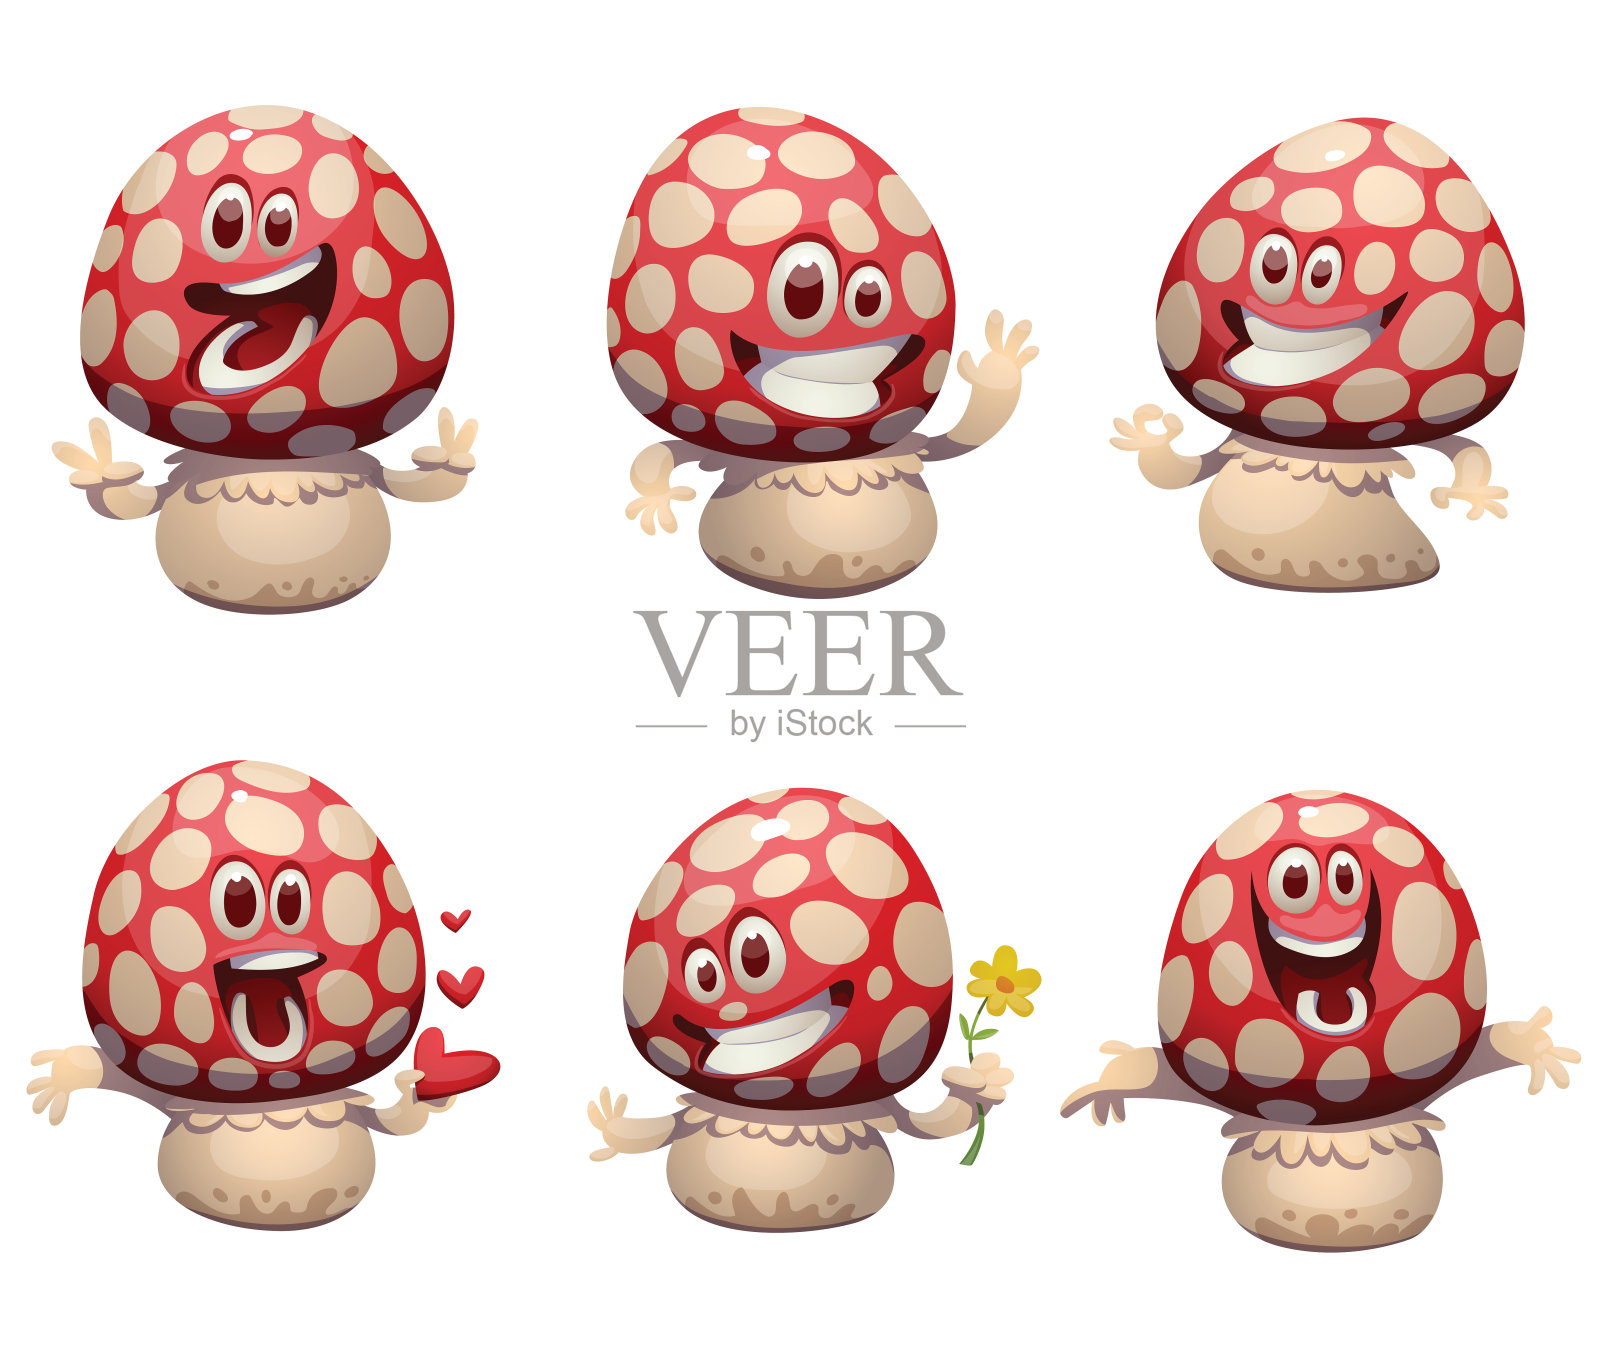 一组有趣的小灵药蘑菇插画图片素材